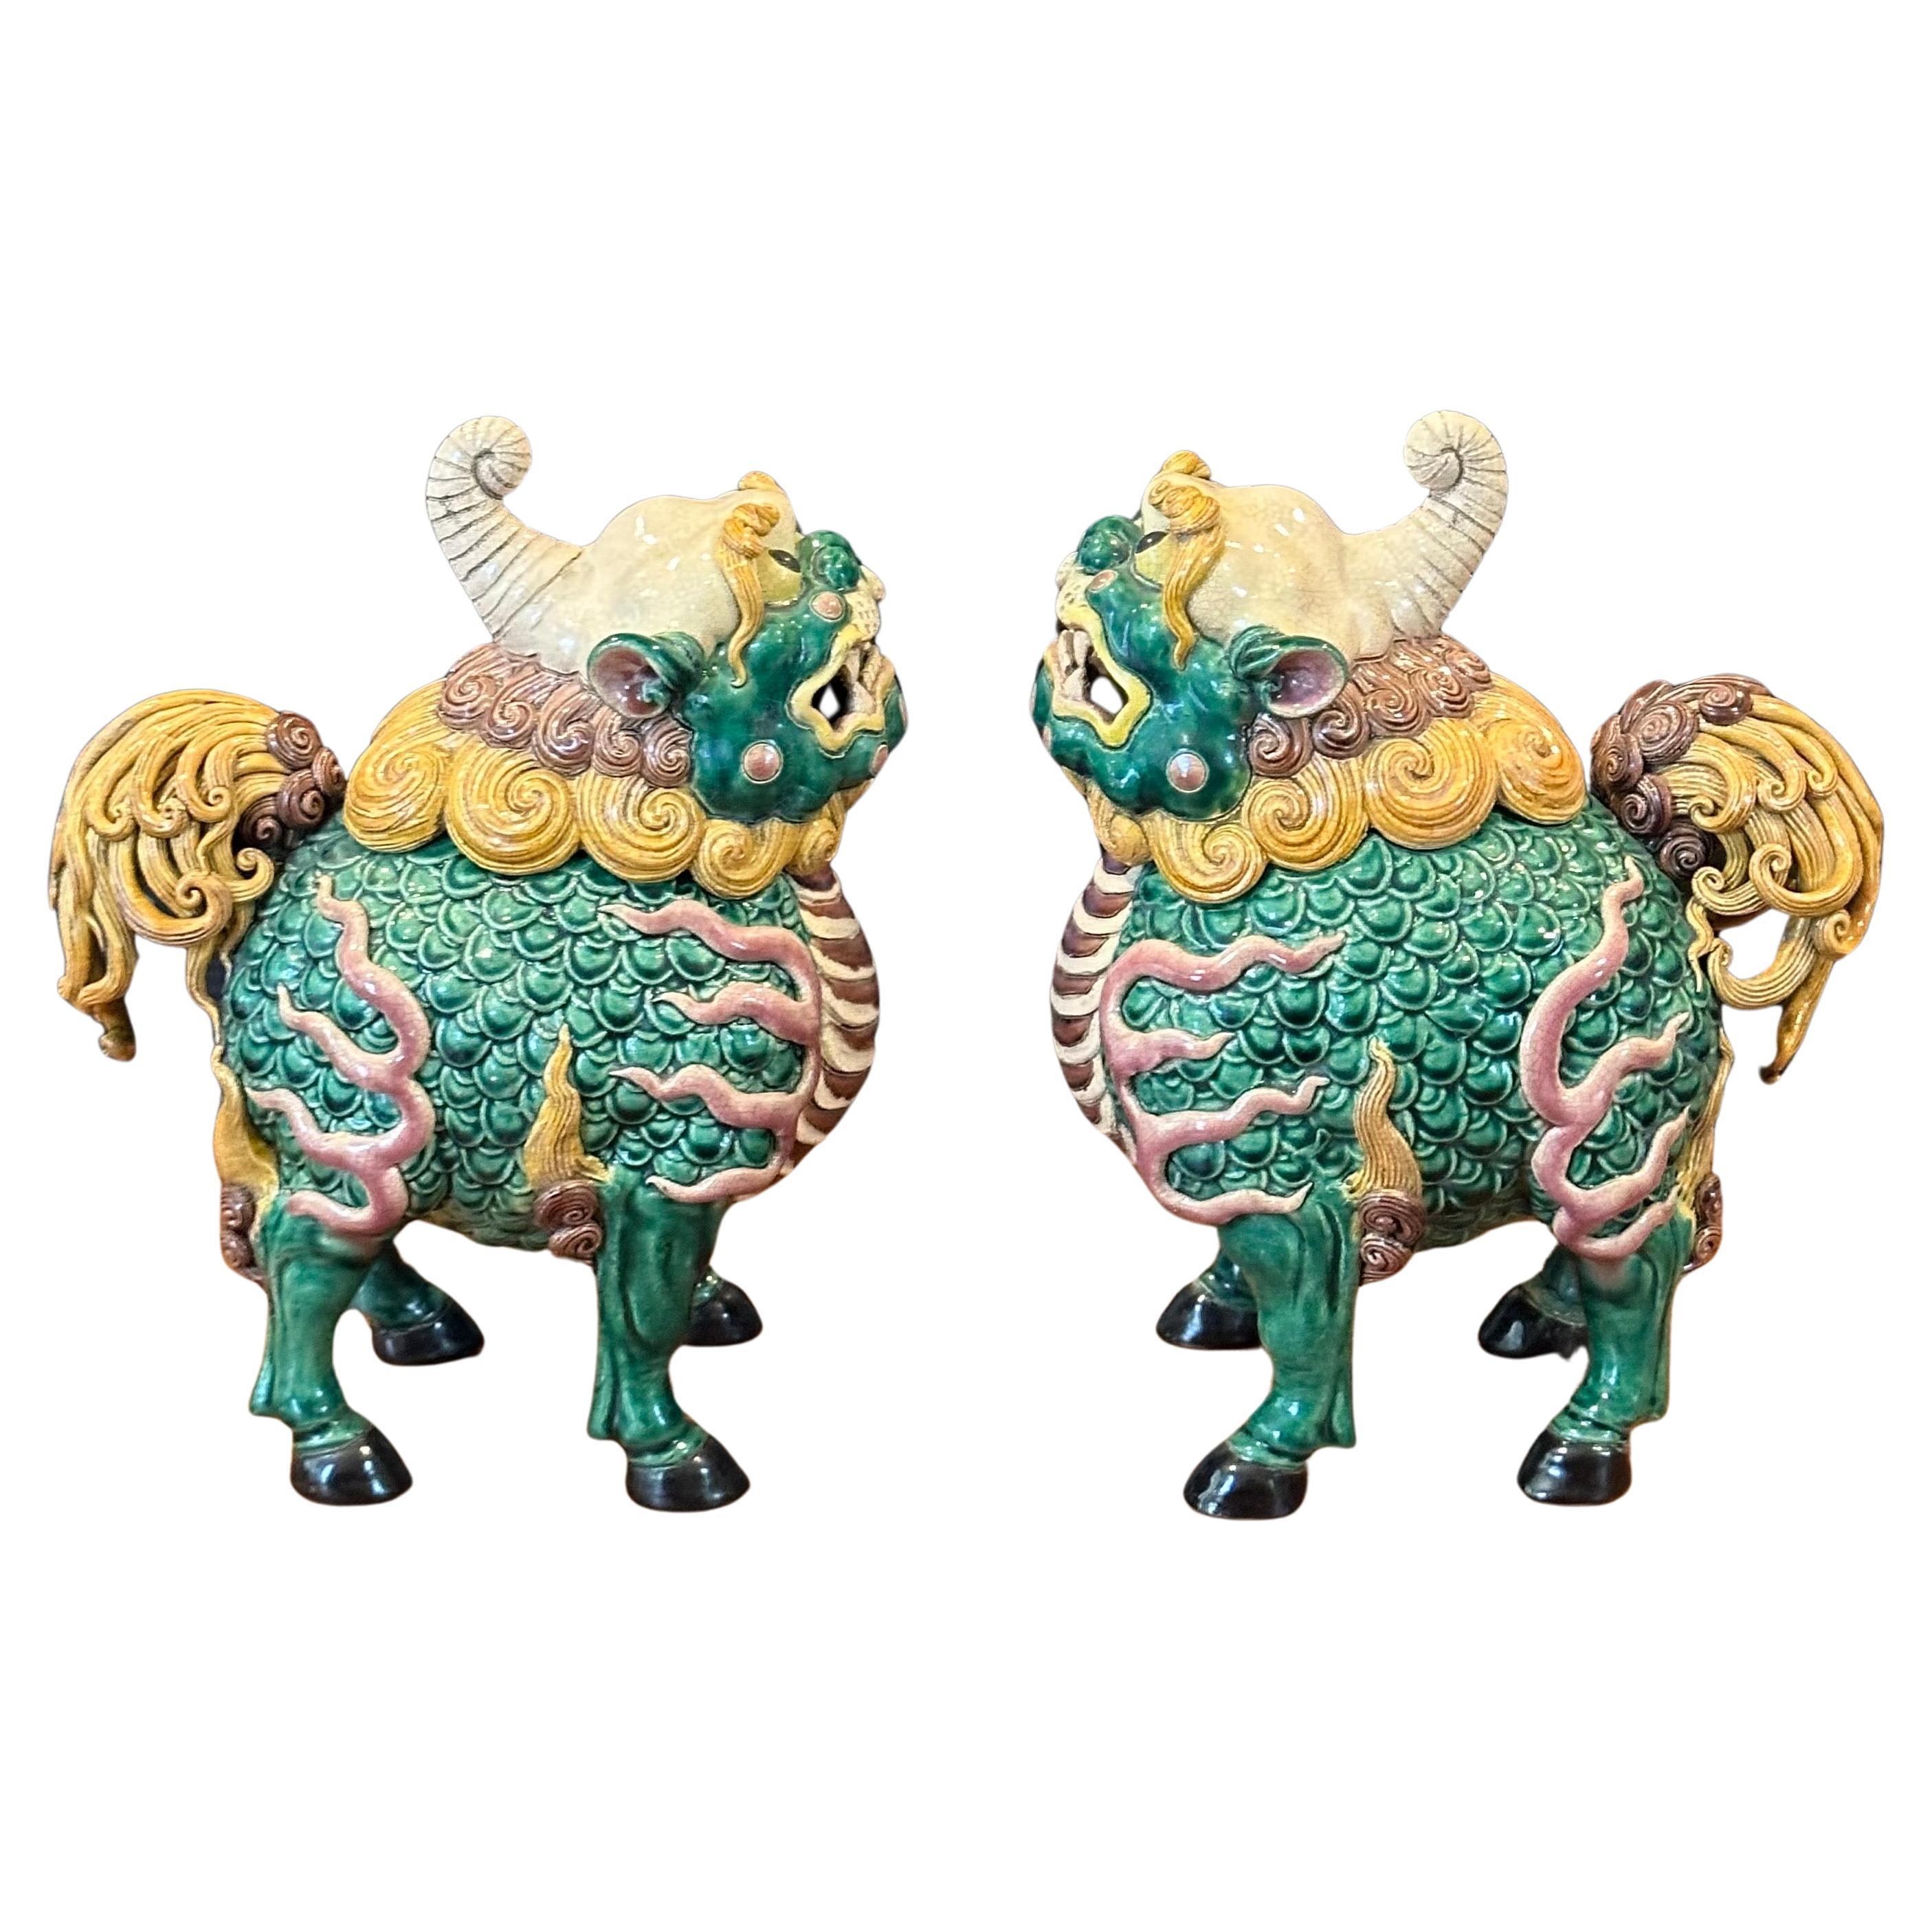 Fantastische Paar Mitte des Jahrhunderts chinesischen Keramik polychrome Weihrauch Weihrauchfass foo Hunde, circa 1970er Jahren. Tolle Details und eine schöne Farbkombination aus Gelb, Grün und Braun; das Paar misst 14 